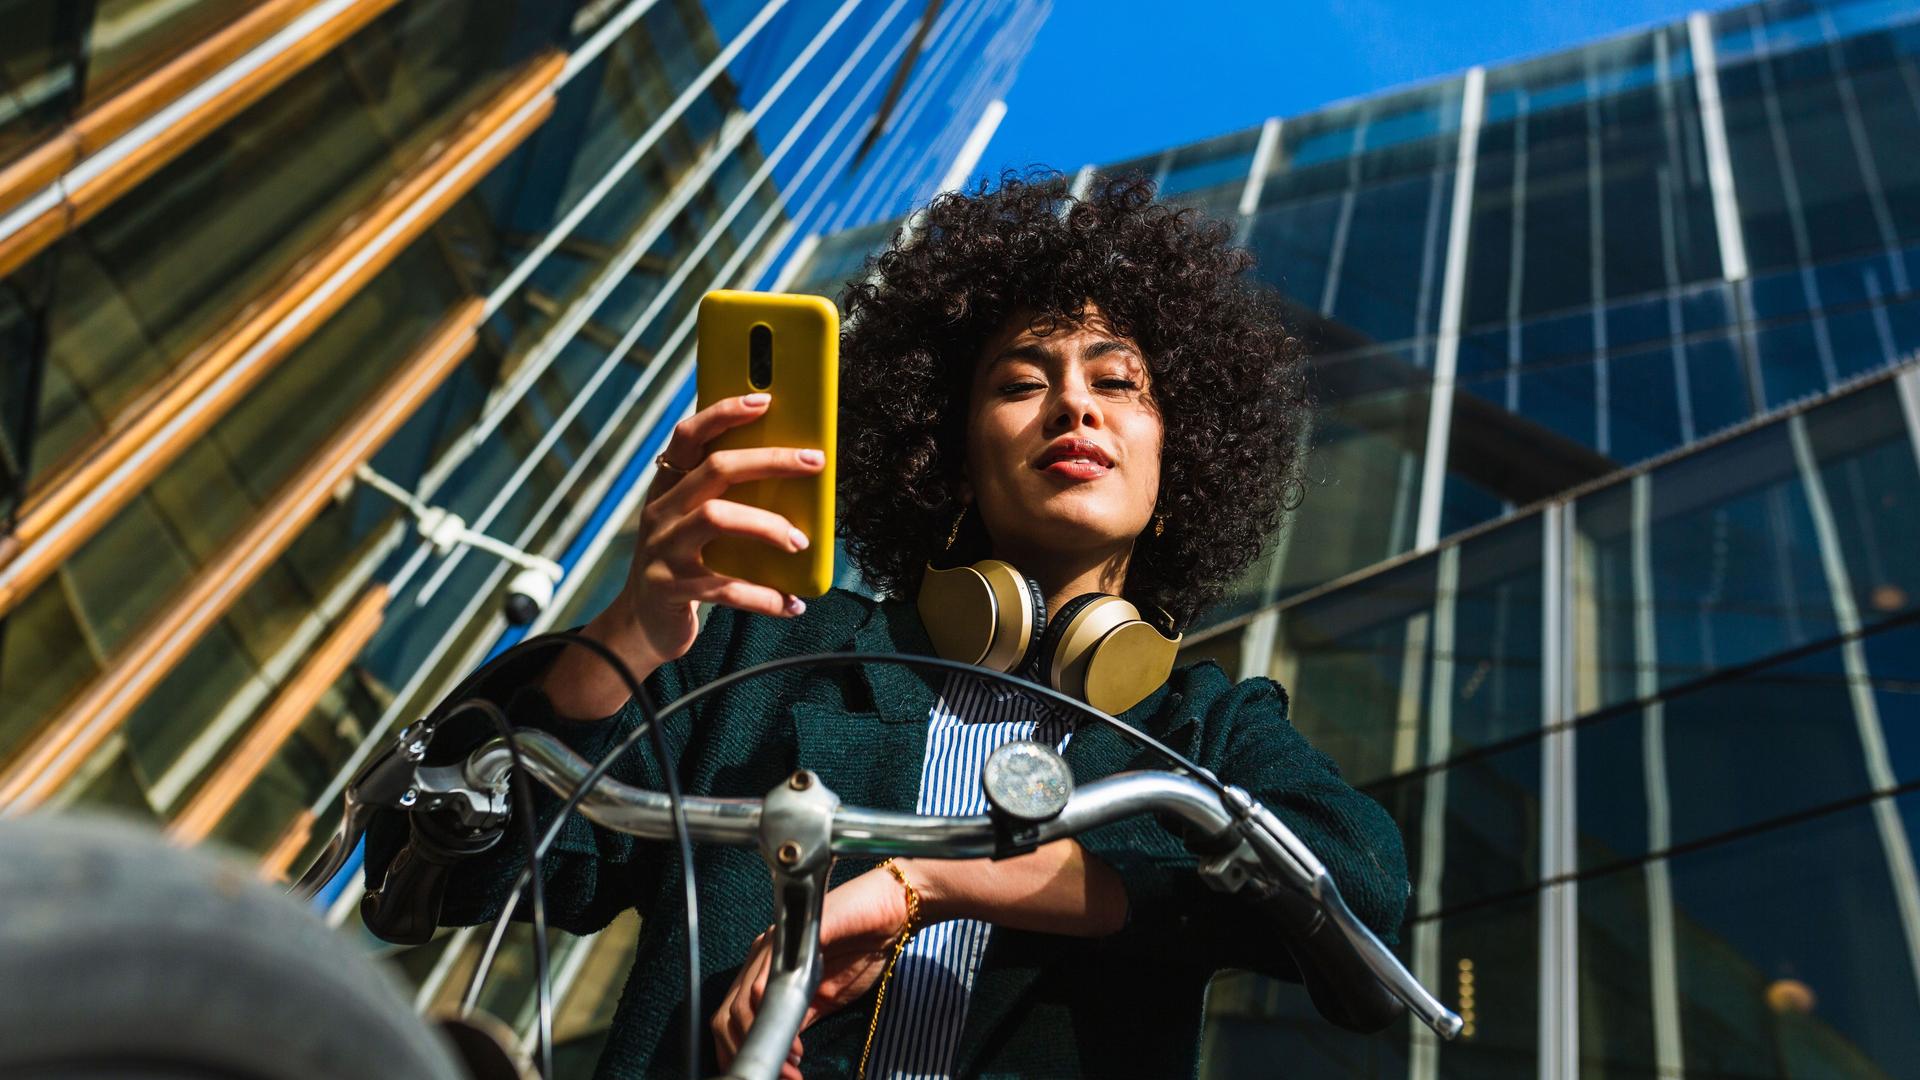 Eine Junge Frau auf einem Fahrrad aus der Froschperspektive hält ein Smartphone in der Hand. Im Hintergrund befinden dich verspiegelte Gebäude und ein blauer Himmel.